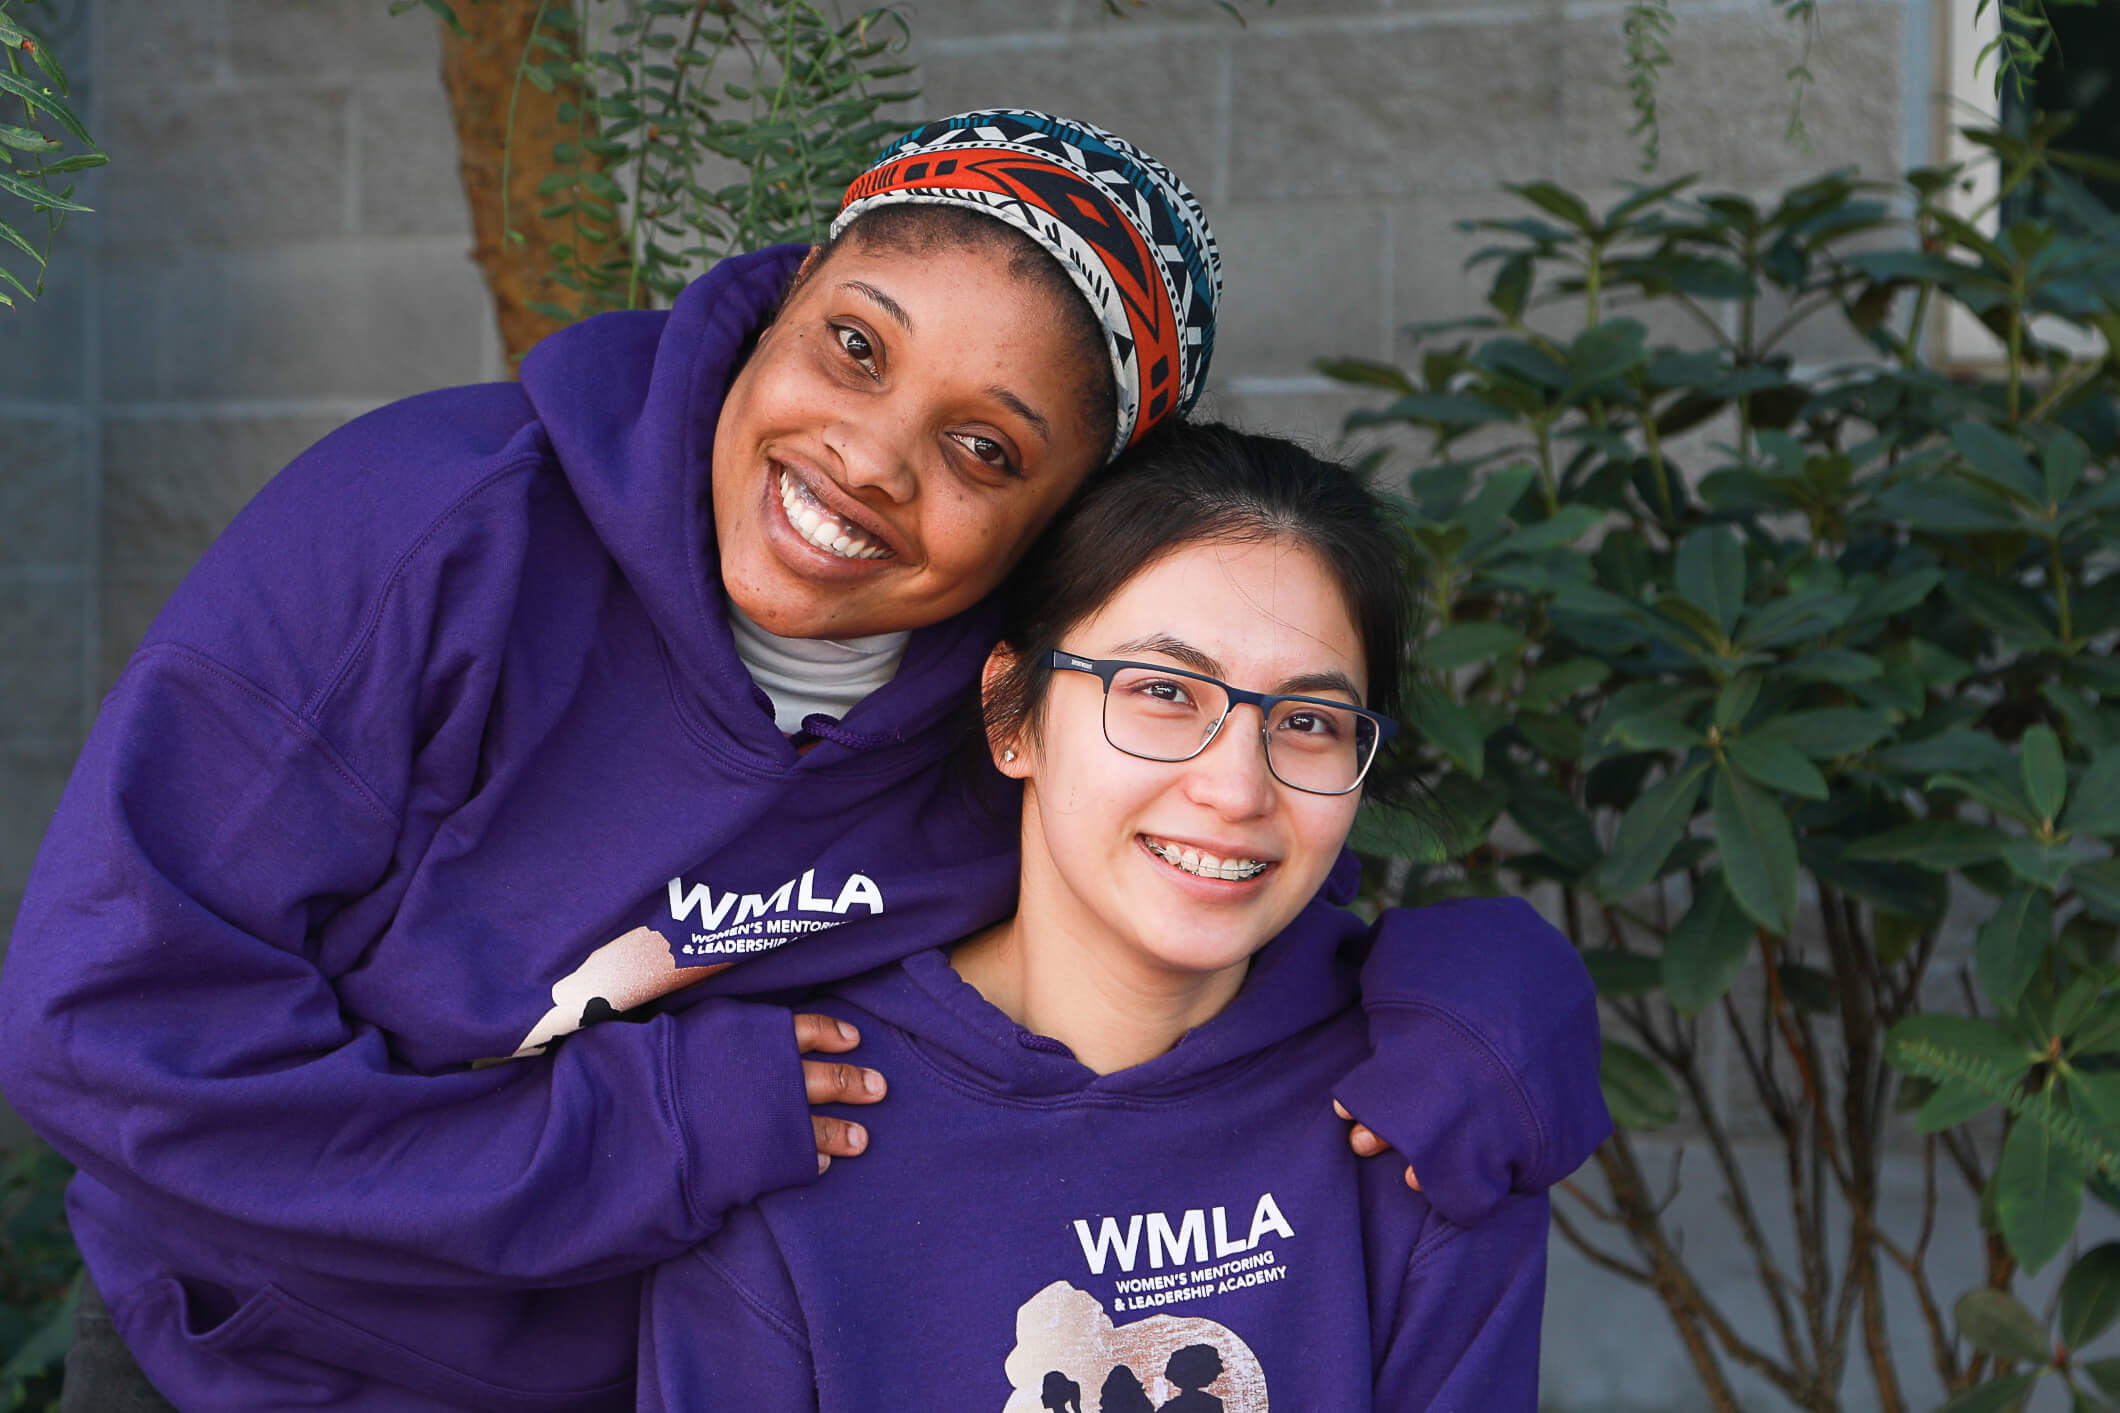 WMLA students